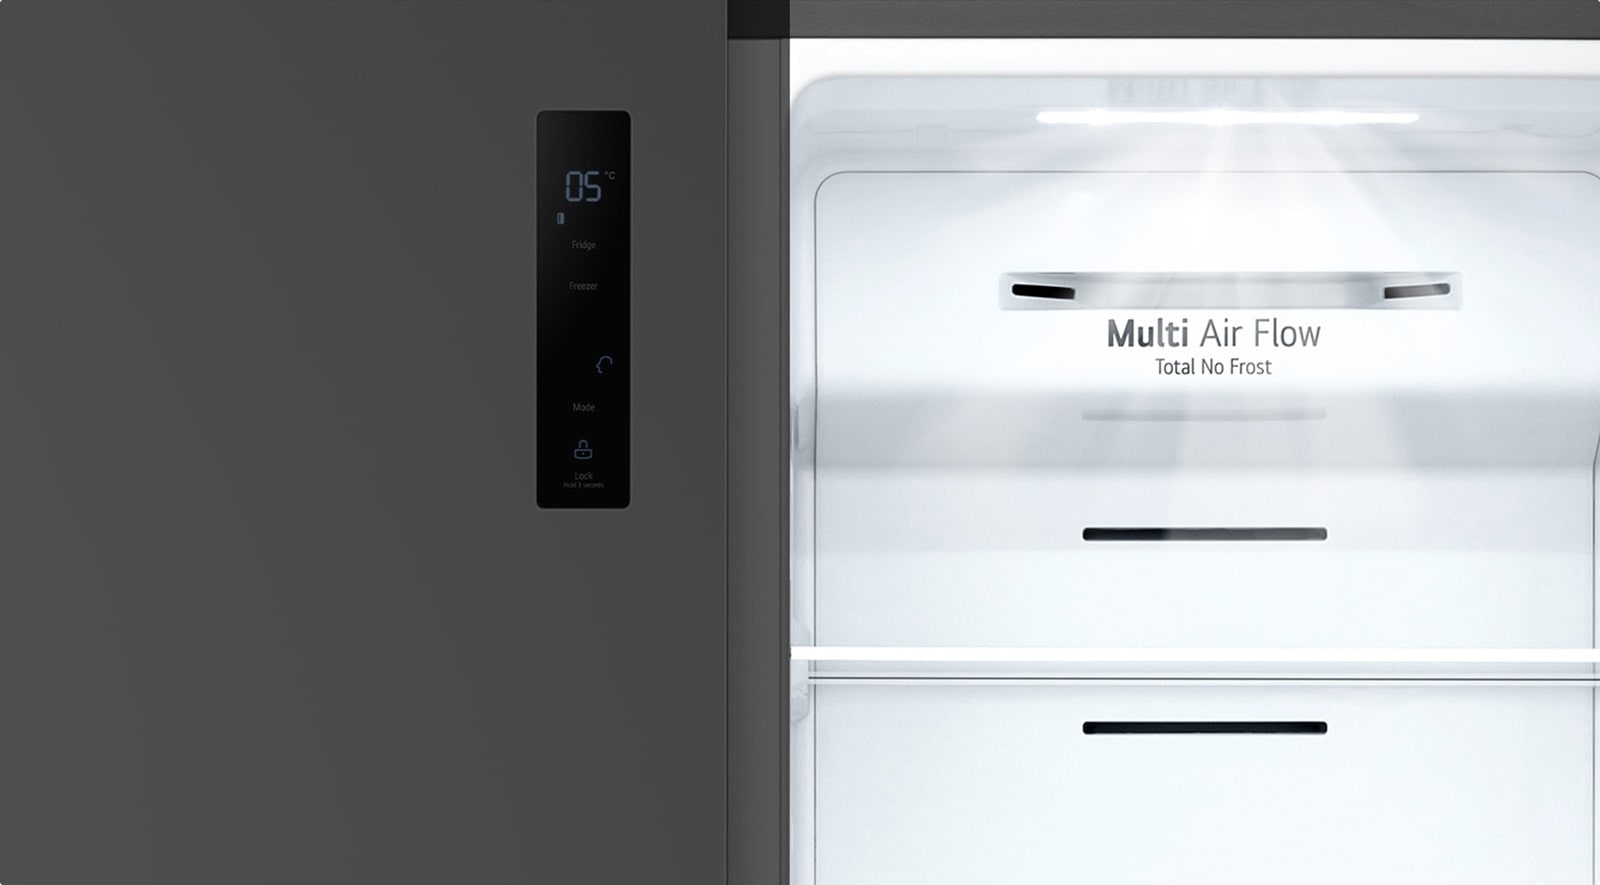 Una luz blanca brilla dentro del refrigerador.